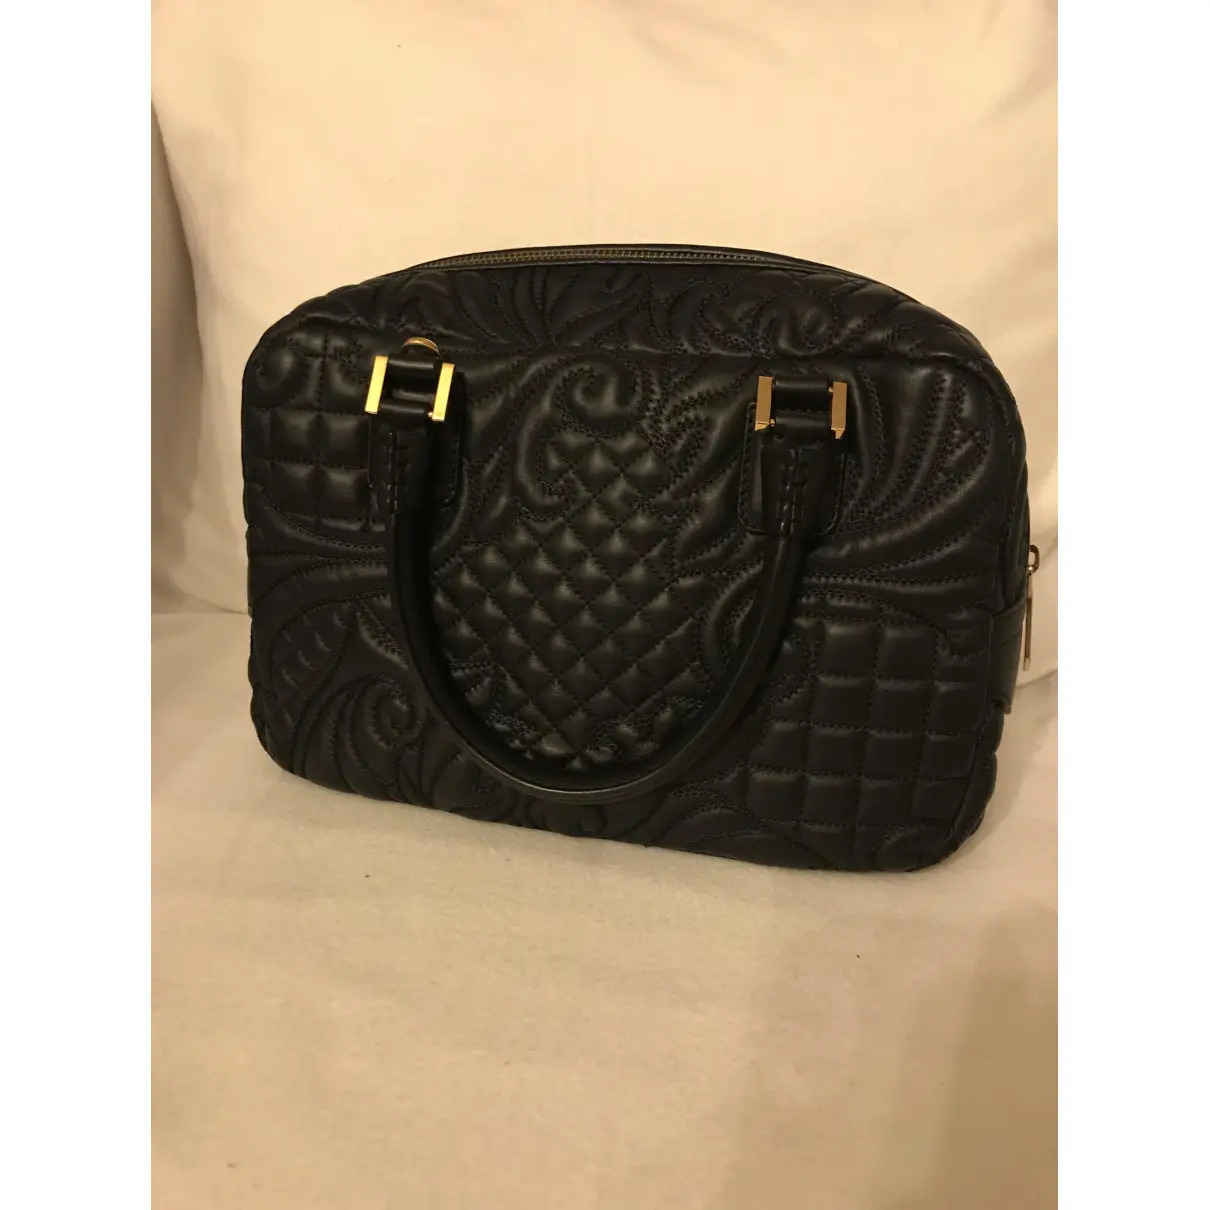 Buy Braschi Leather handbag online